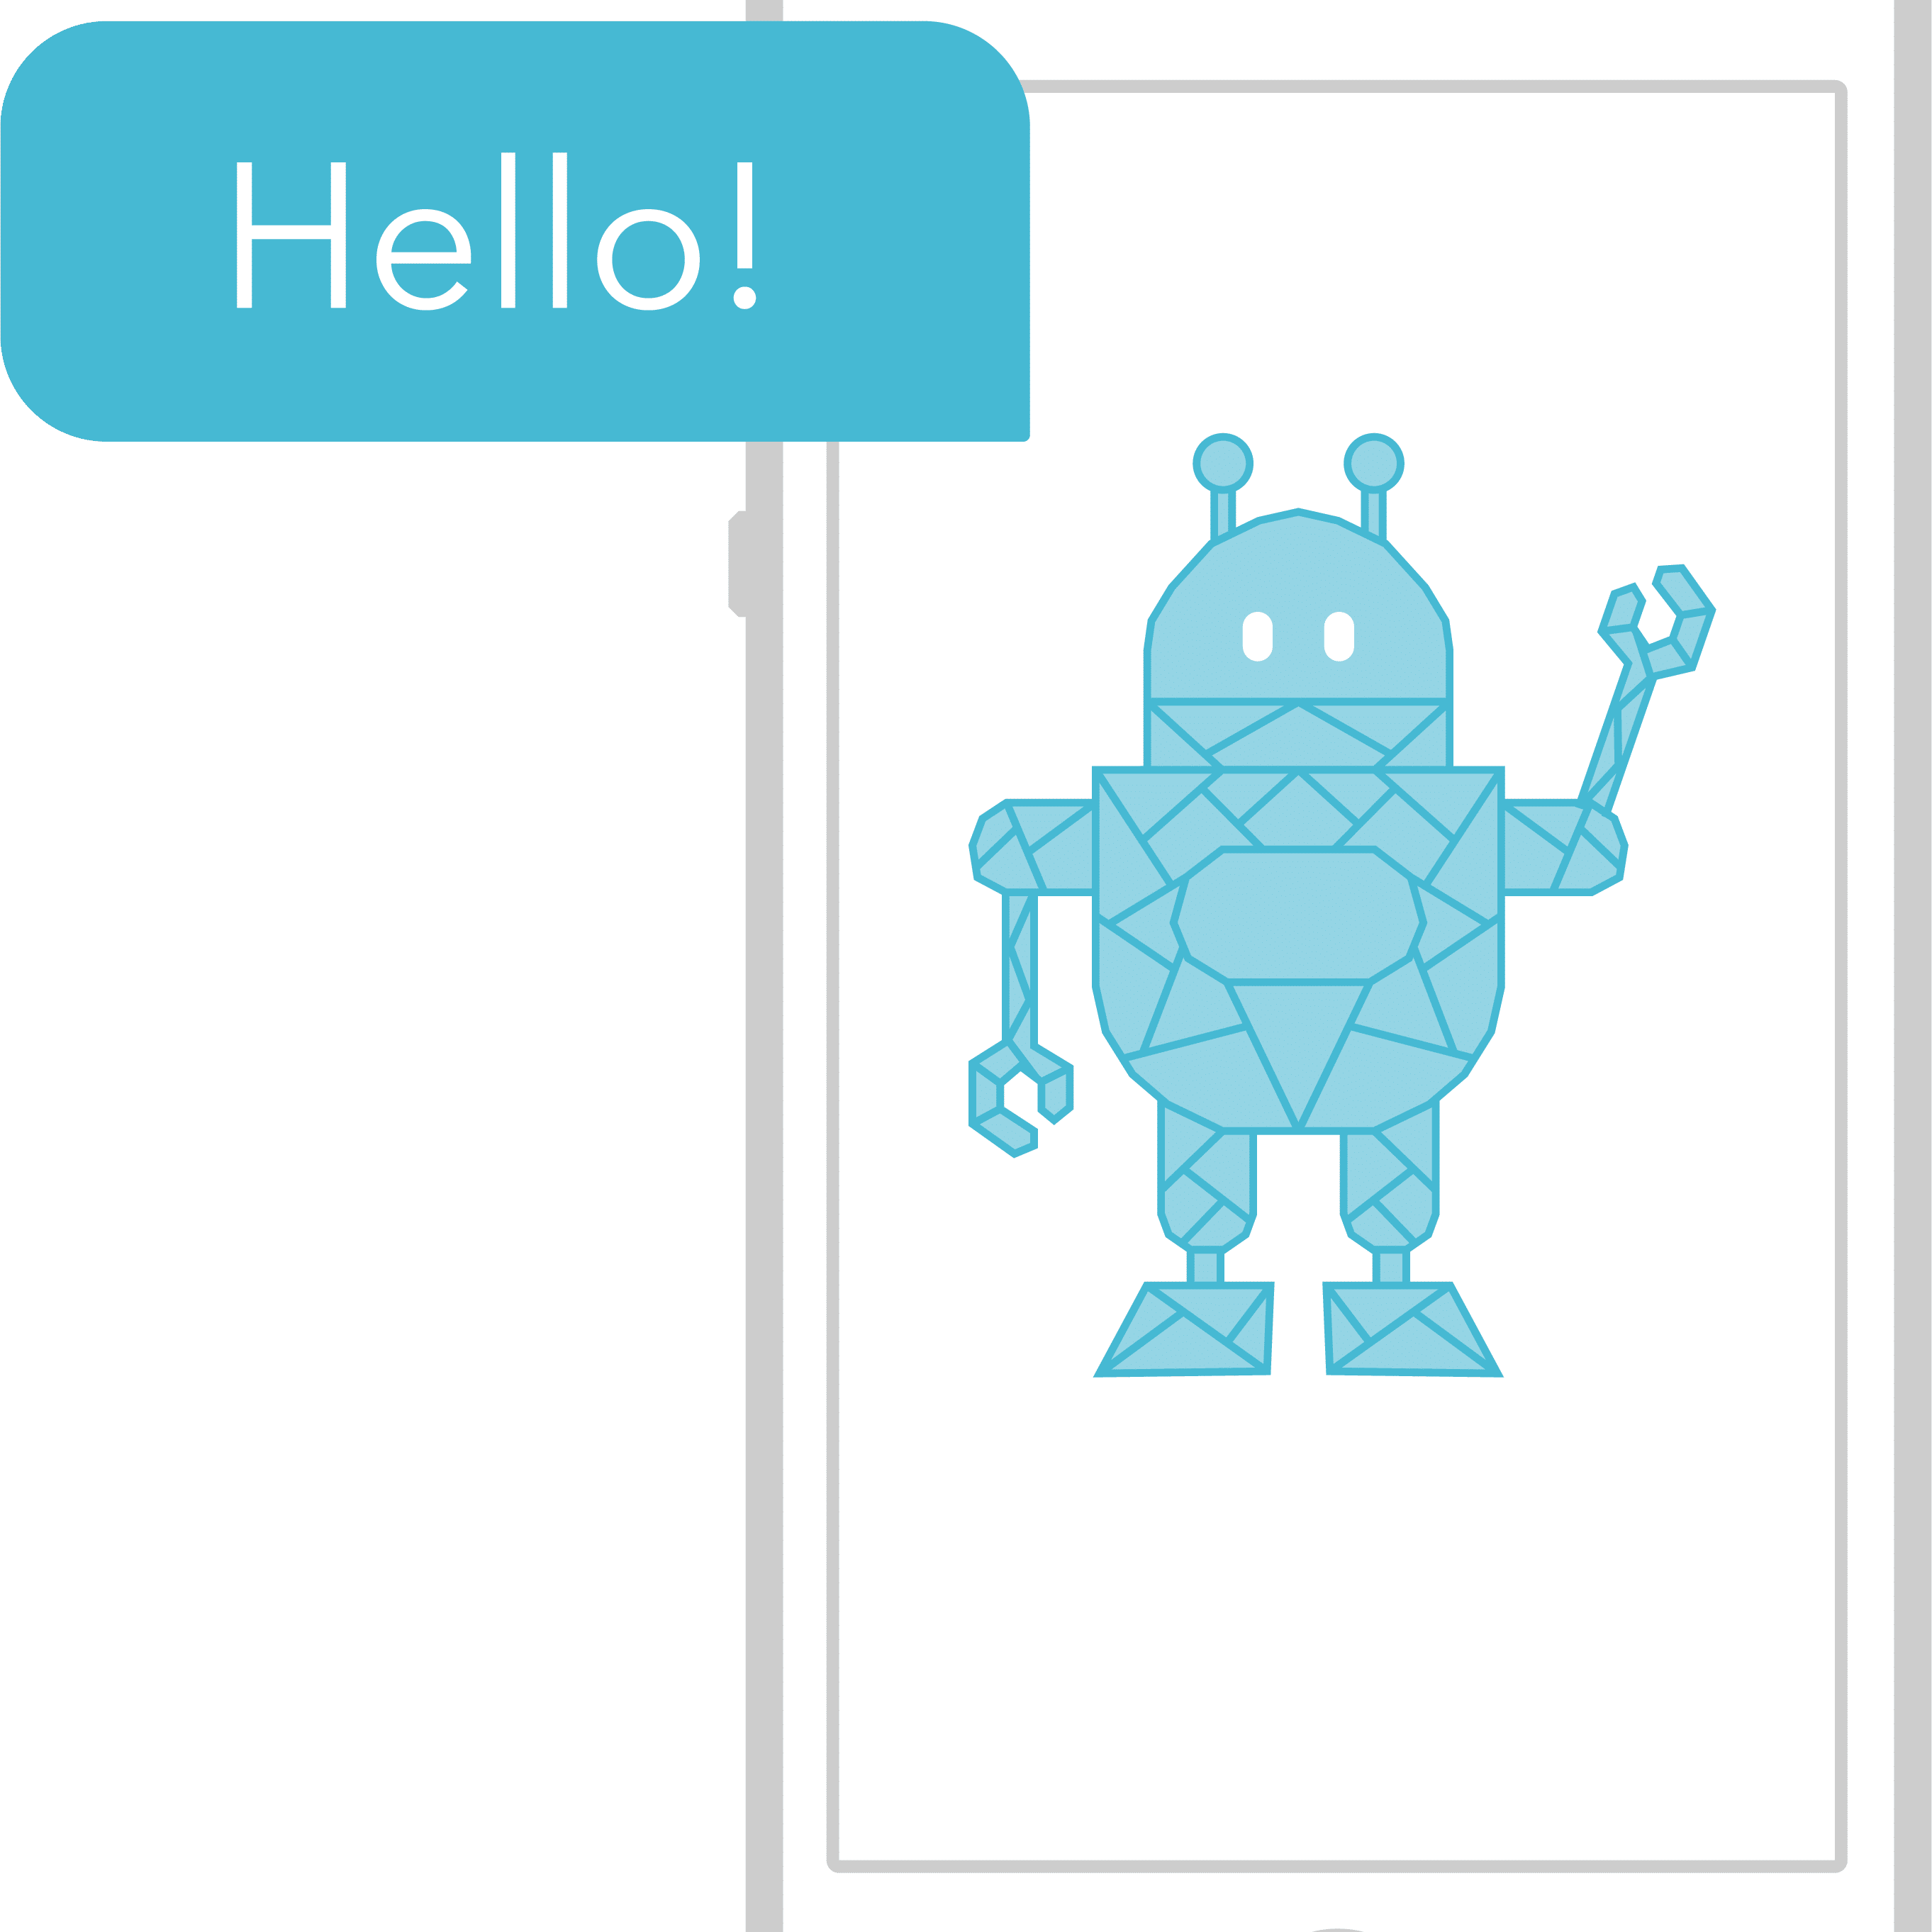 Ein Chatbot sagt Hallo